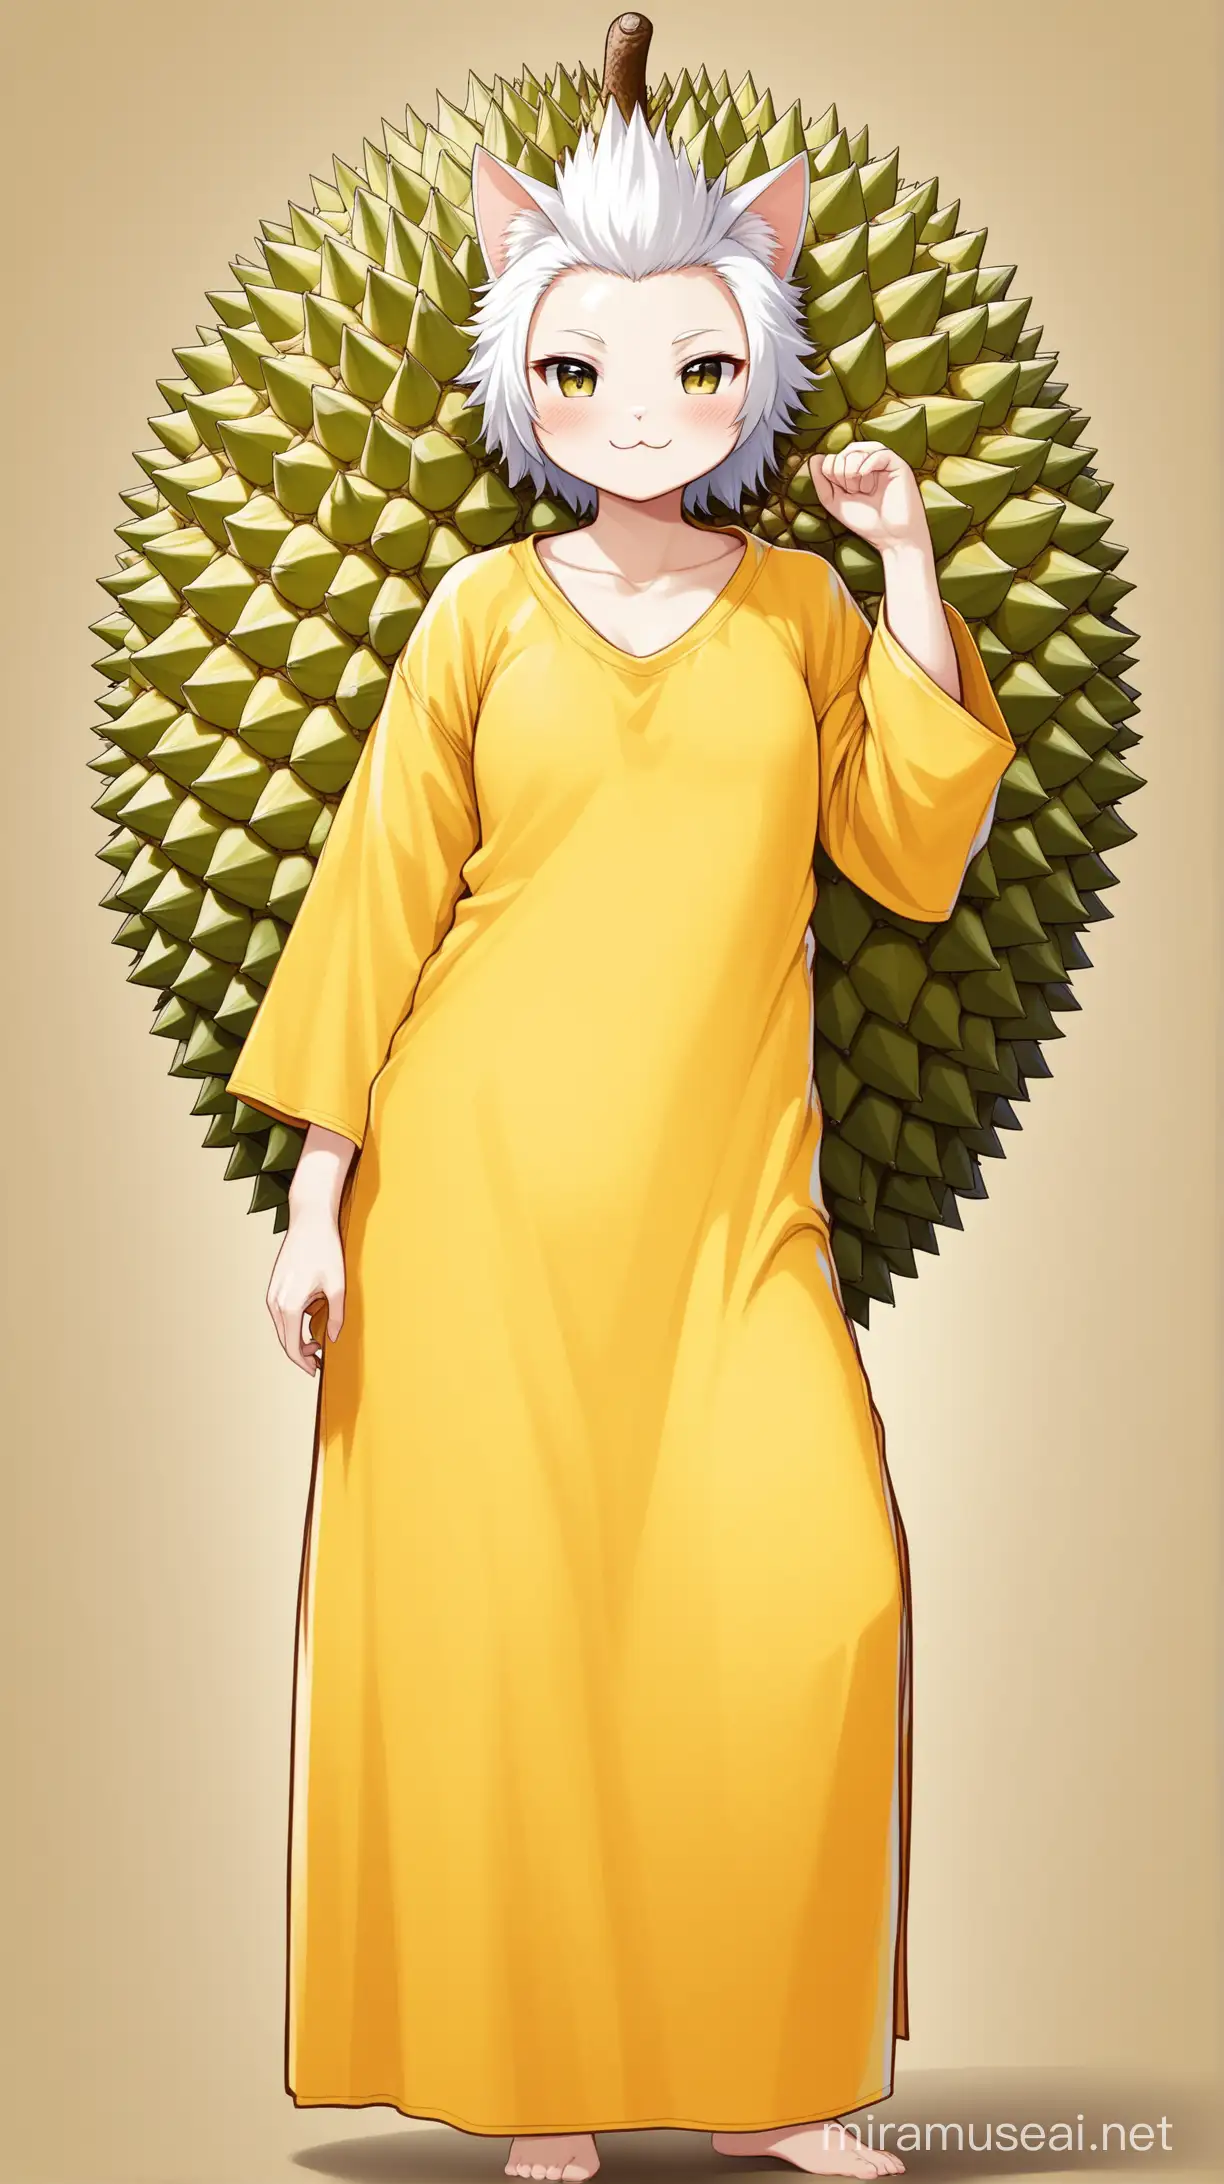 un chat humain comme durian au cheveux de la couleur du fruit durian, porte de longs vêtements